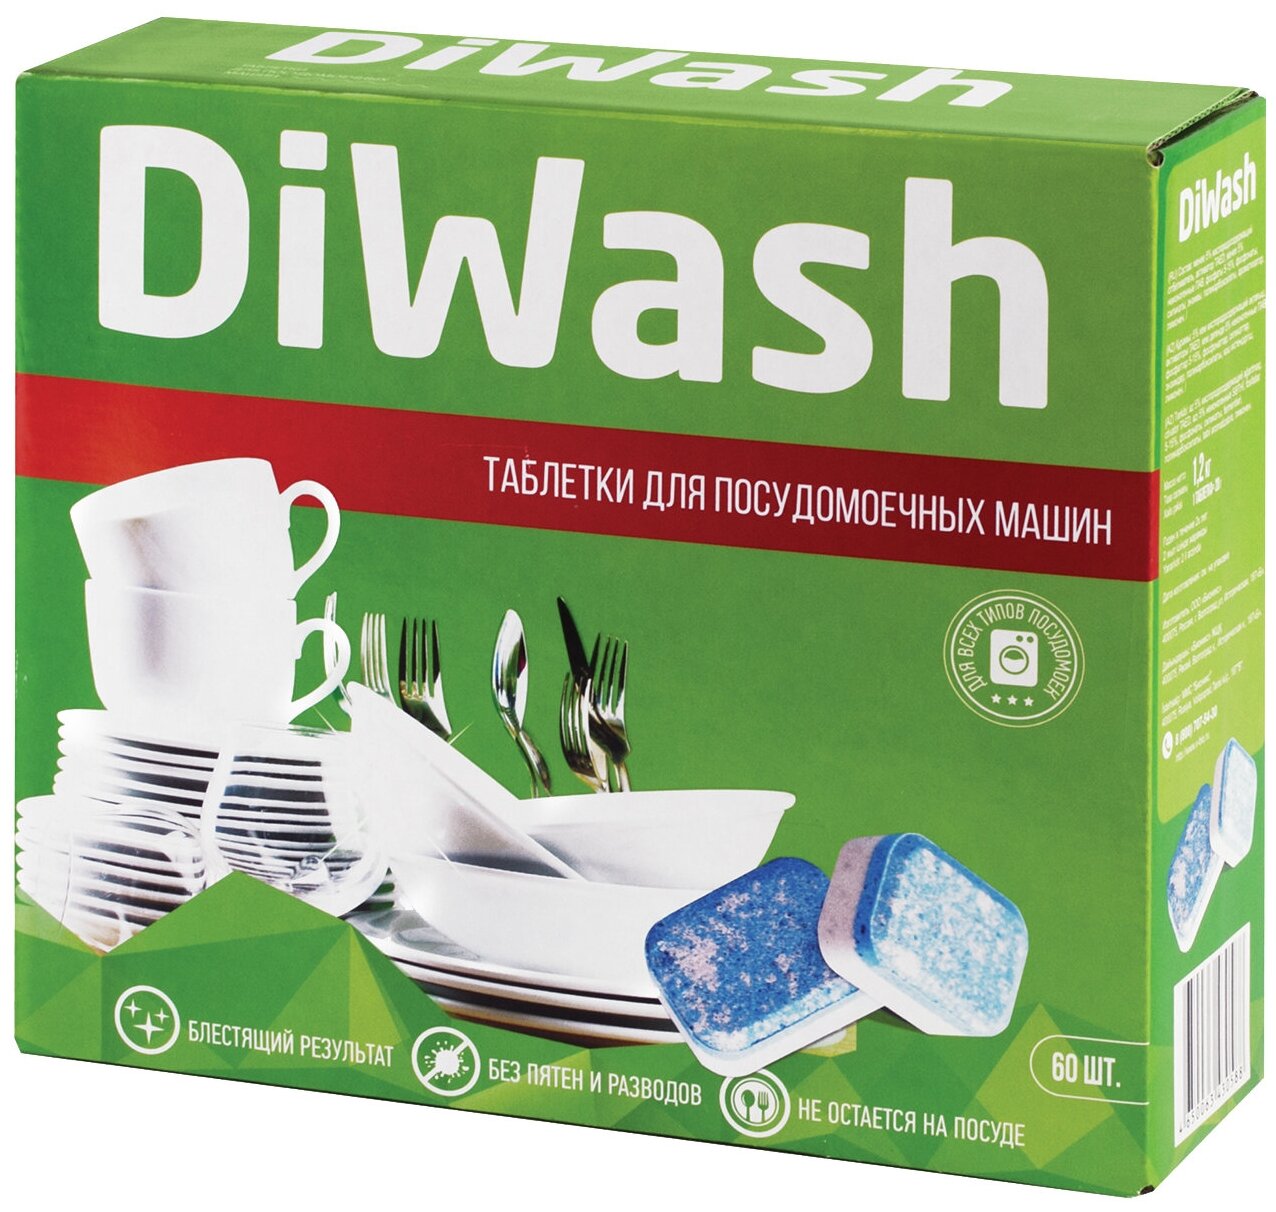 Таблетки для посудомоечной машины DiWash Diwash таблетки